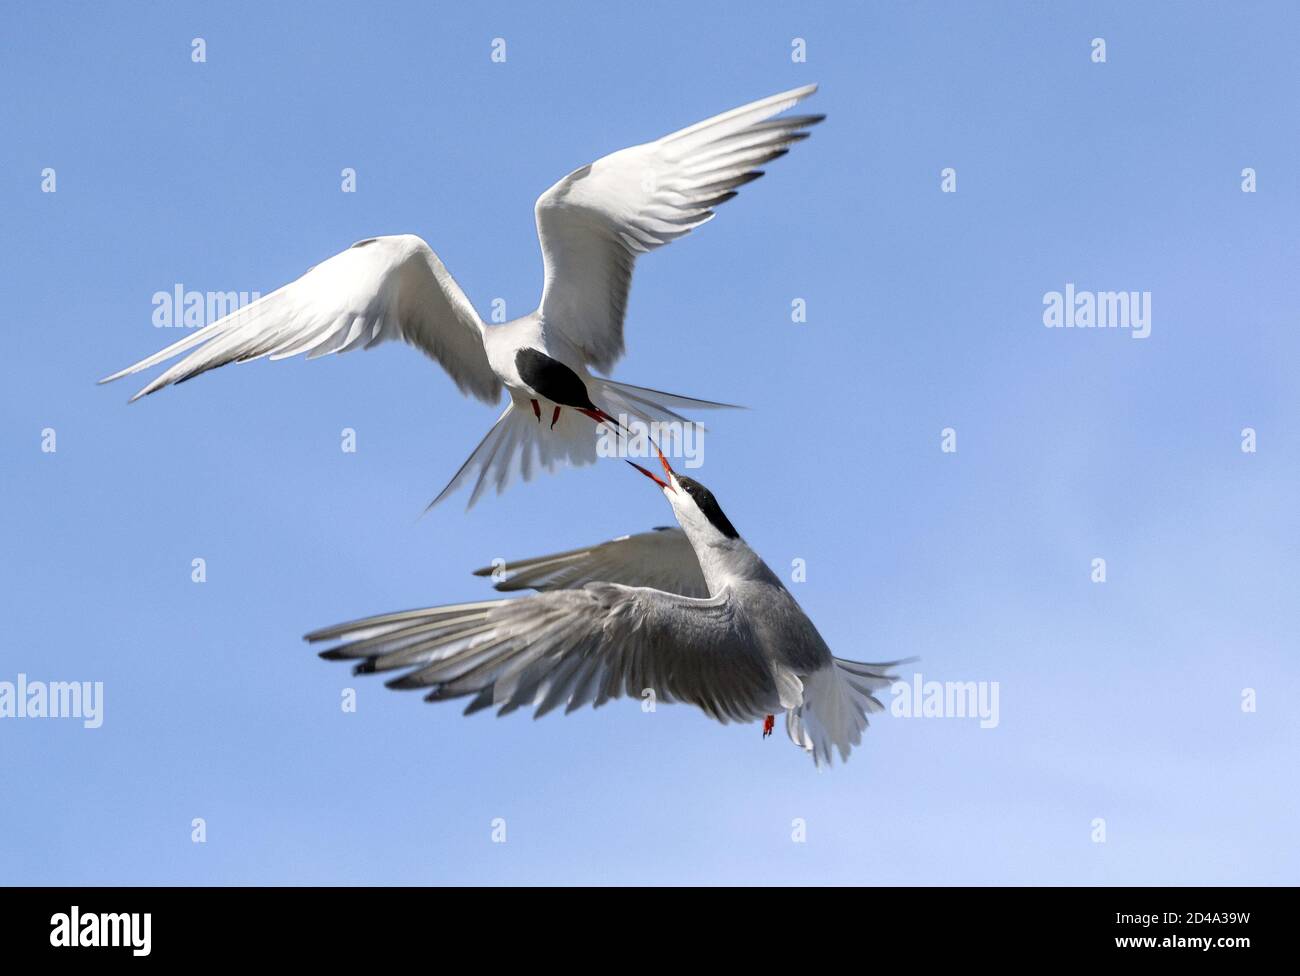 Terns communs (Sterna hirundo) interagissant en vol. Des sternes adultes en vol sur fond bleu ciel Banque D'Images